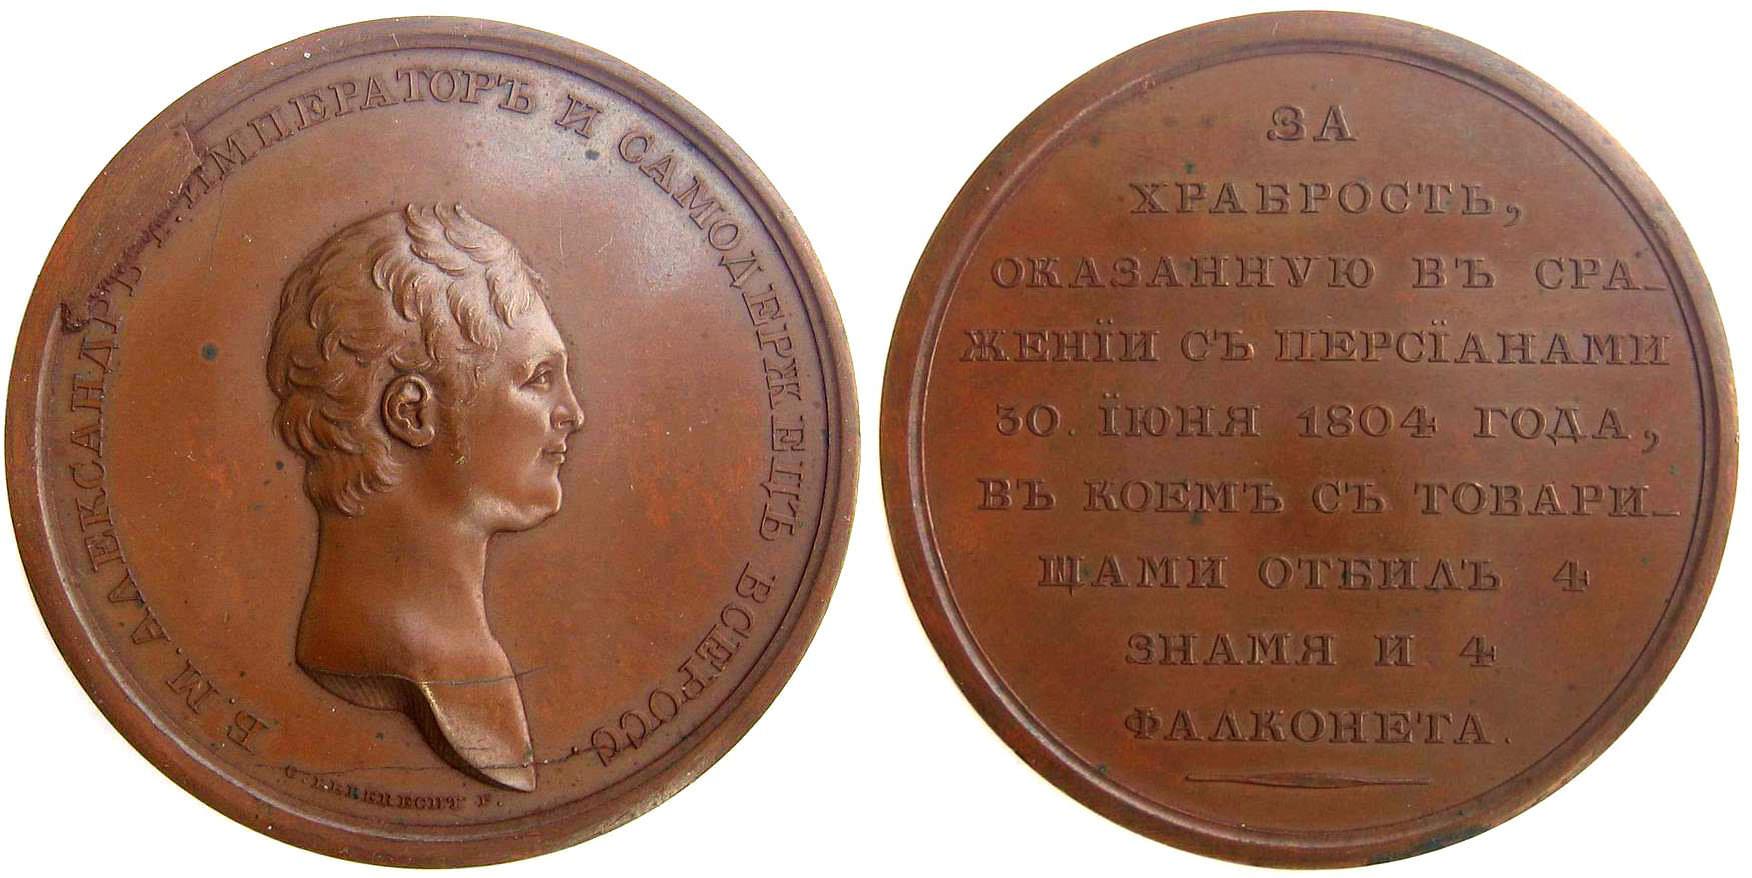 Медаль За храбрость, оказанную в сражении с персами